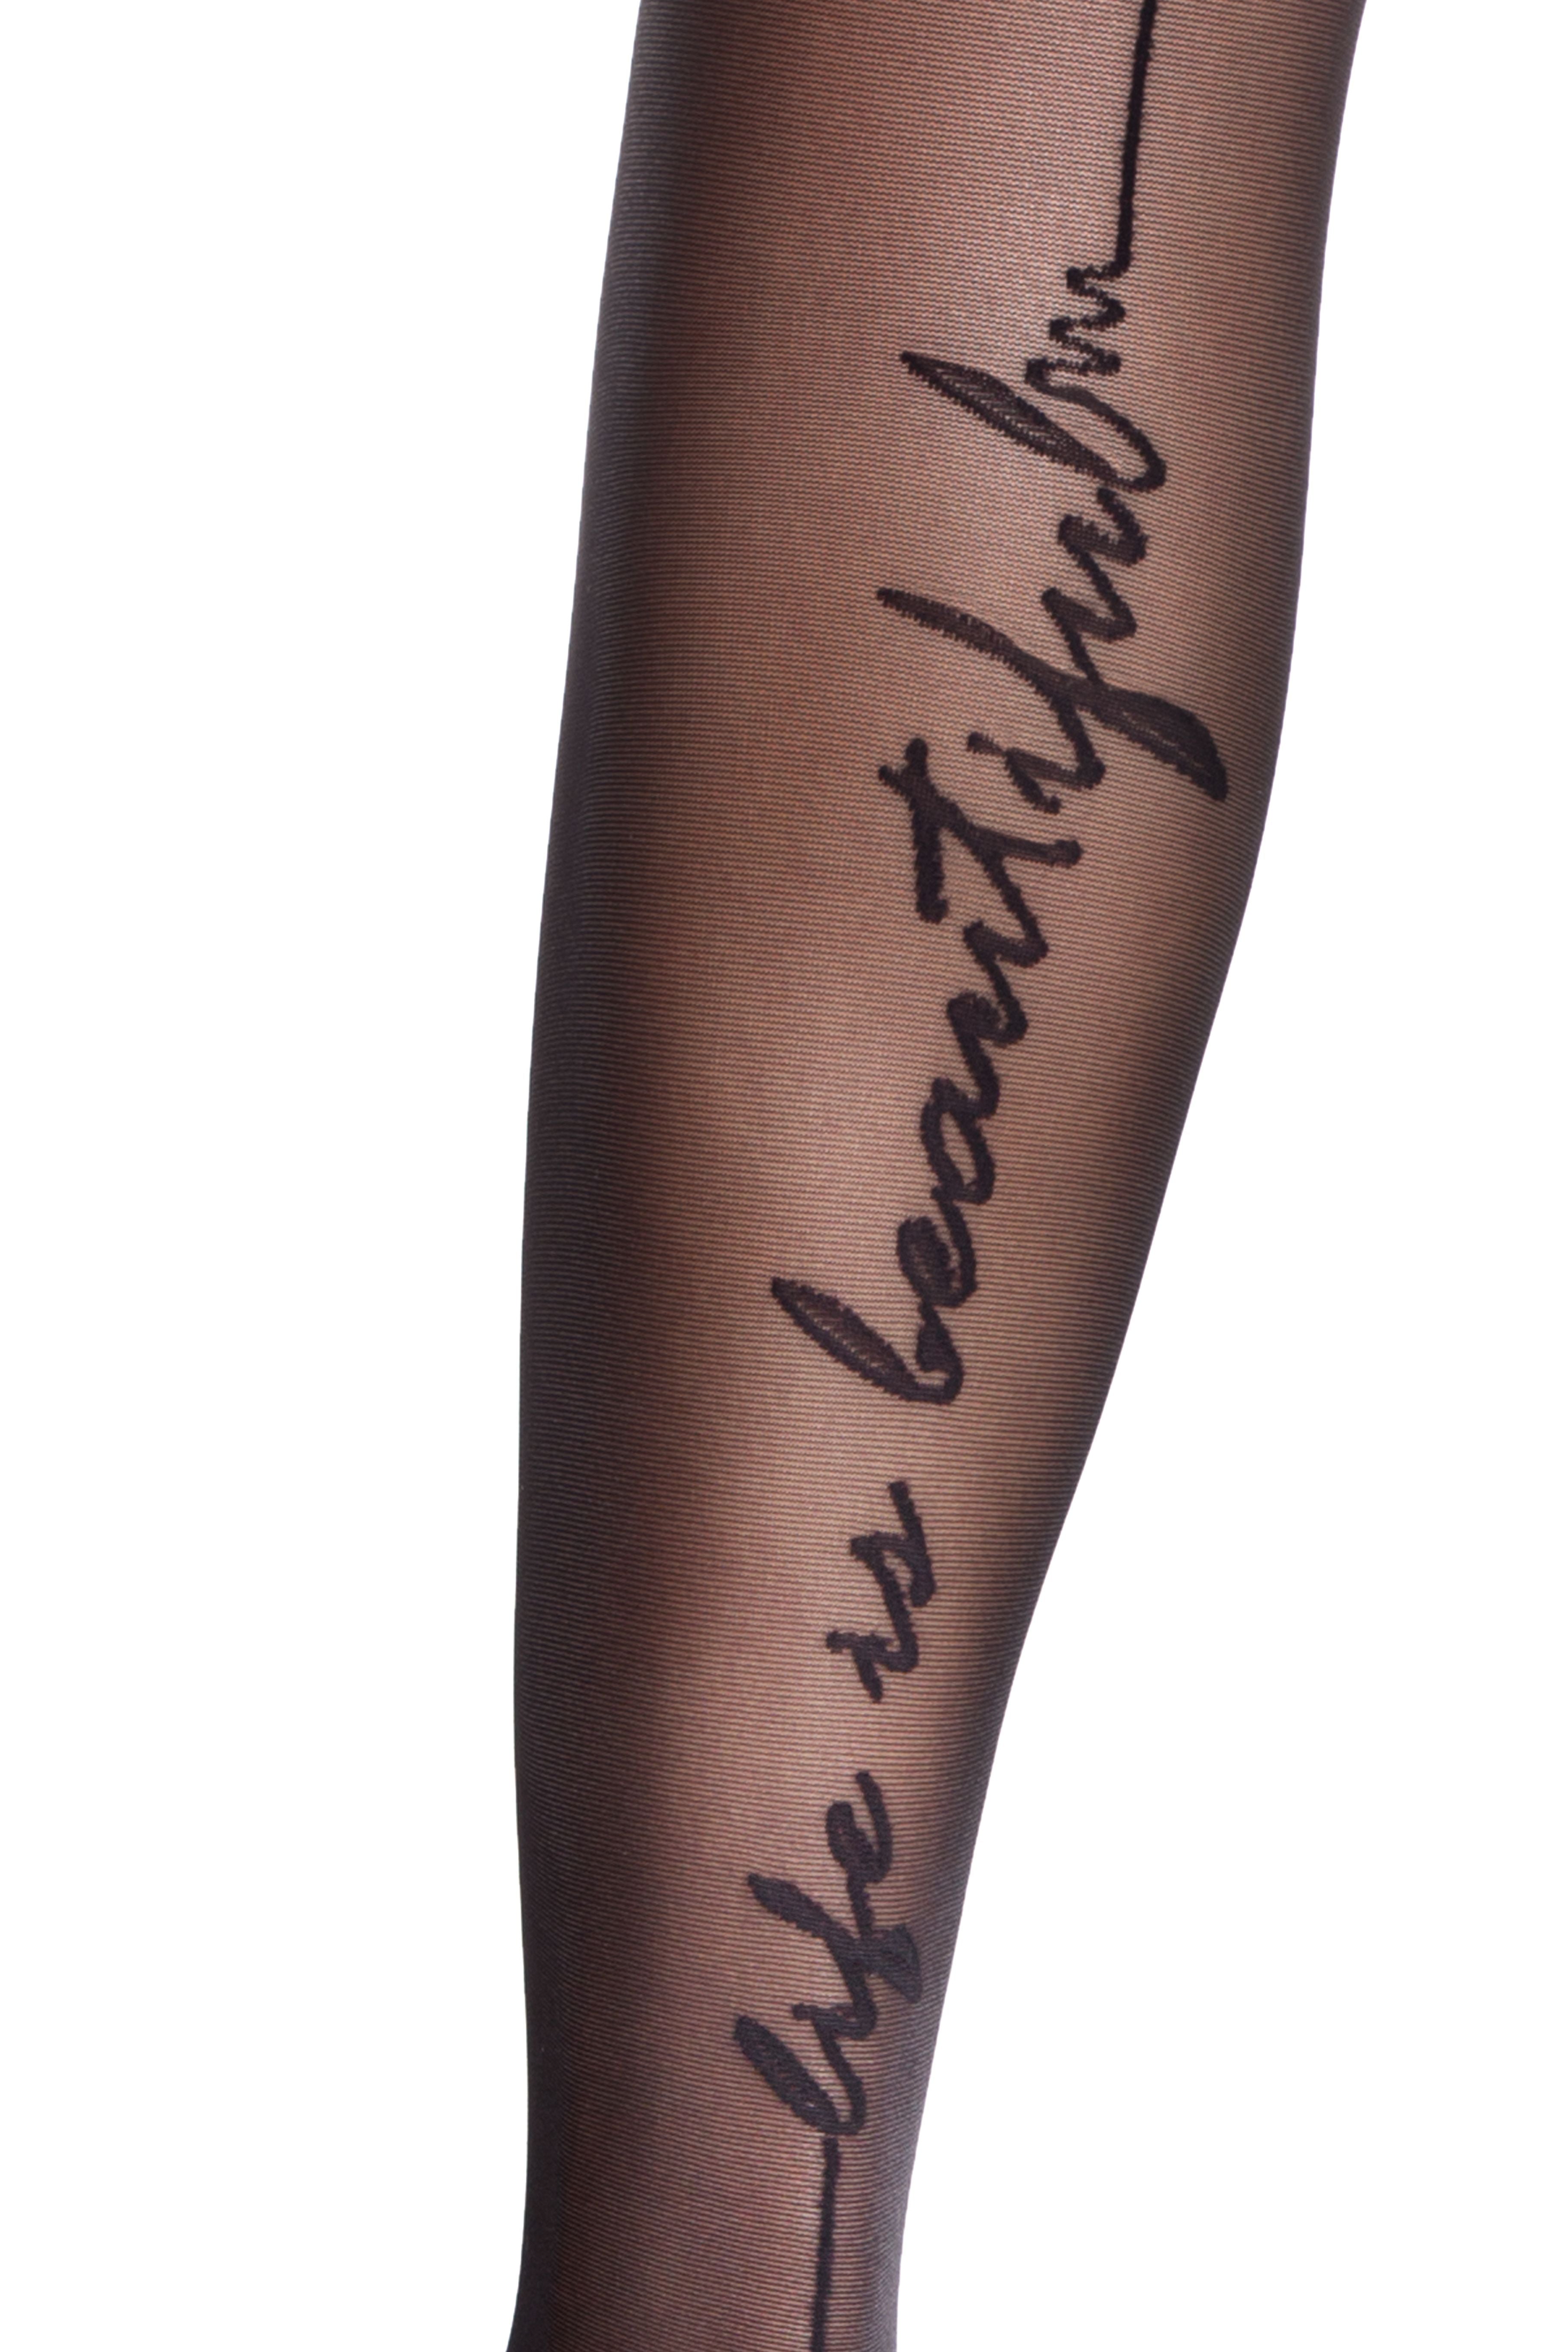 Hlačne nogavice s tatujem v obliki napisa "life is Beautiful" in črto zadaj Conte Elegant Beauty 20 den